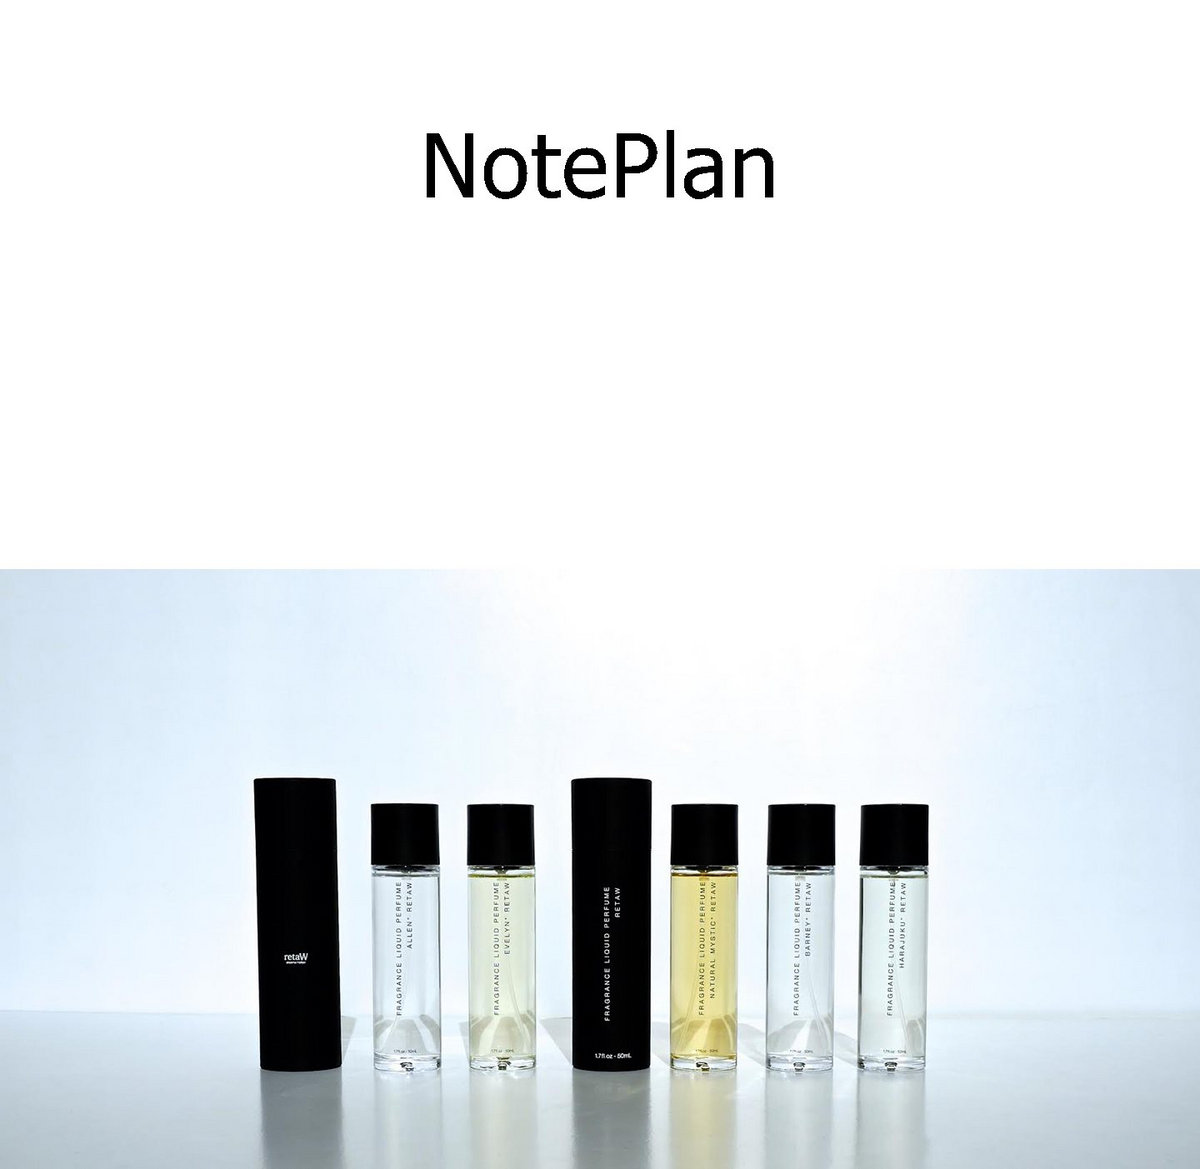 NotePlan 1.6.25 Download Free